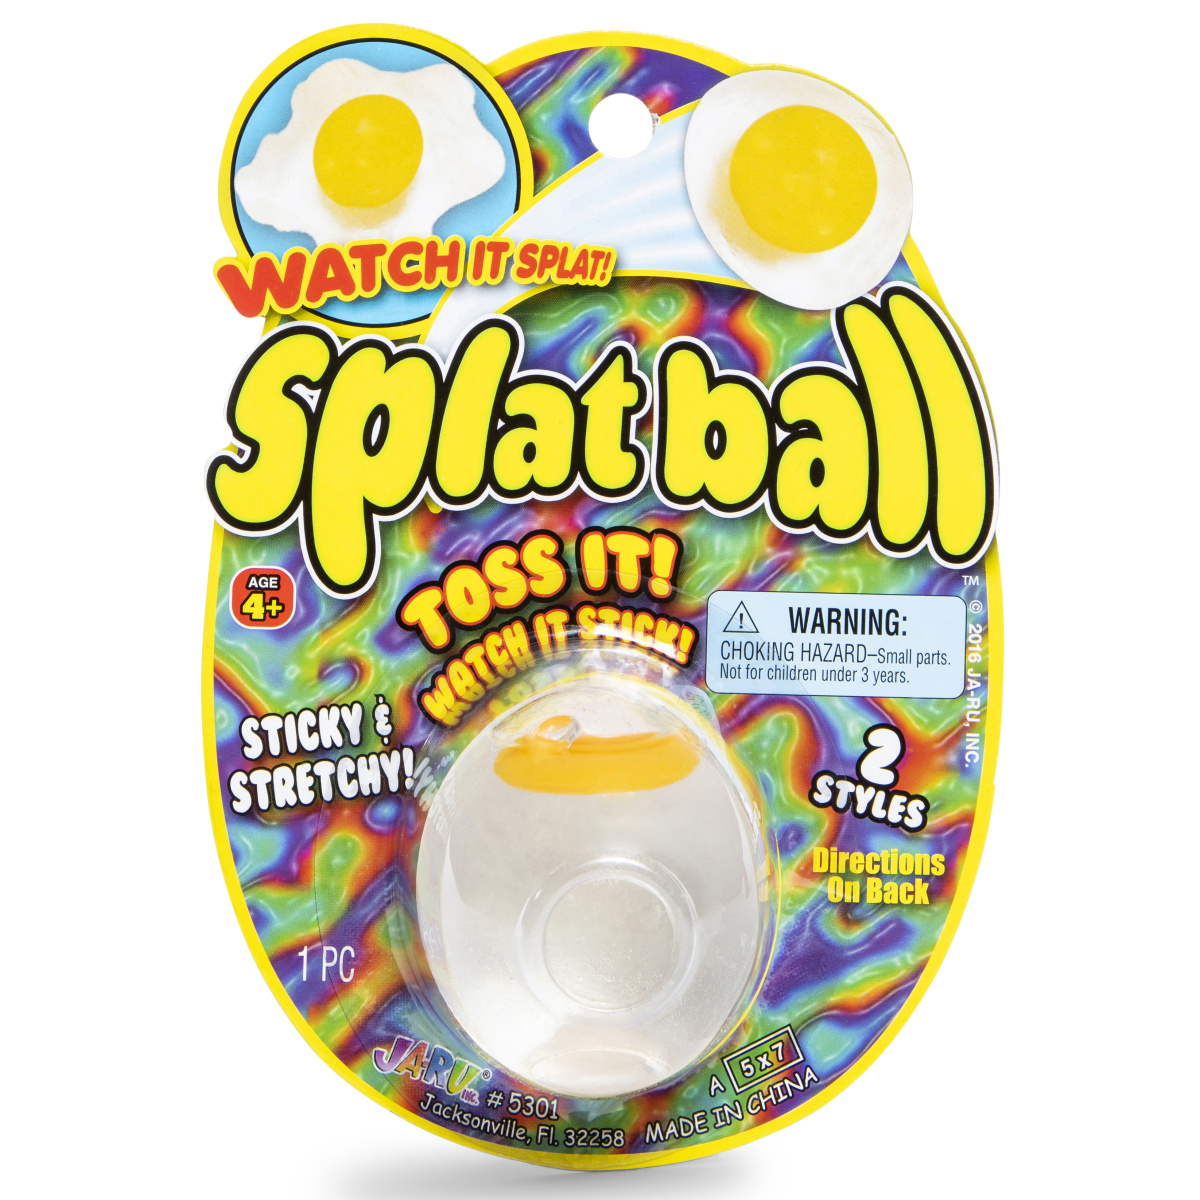 Splat Ball